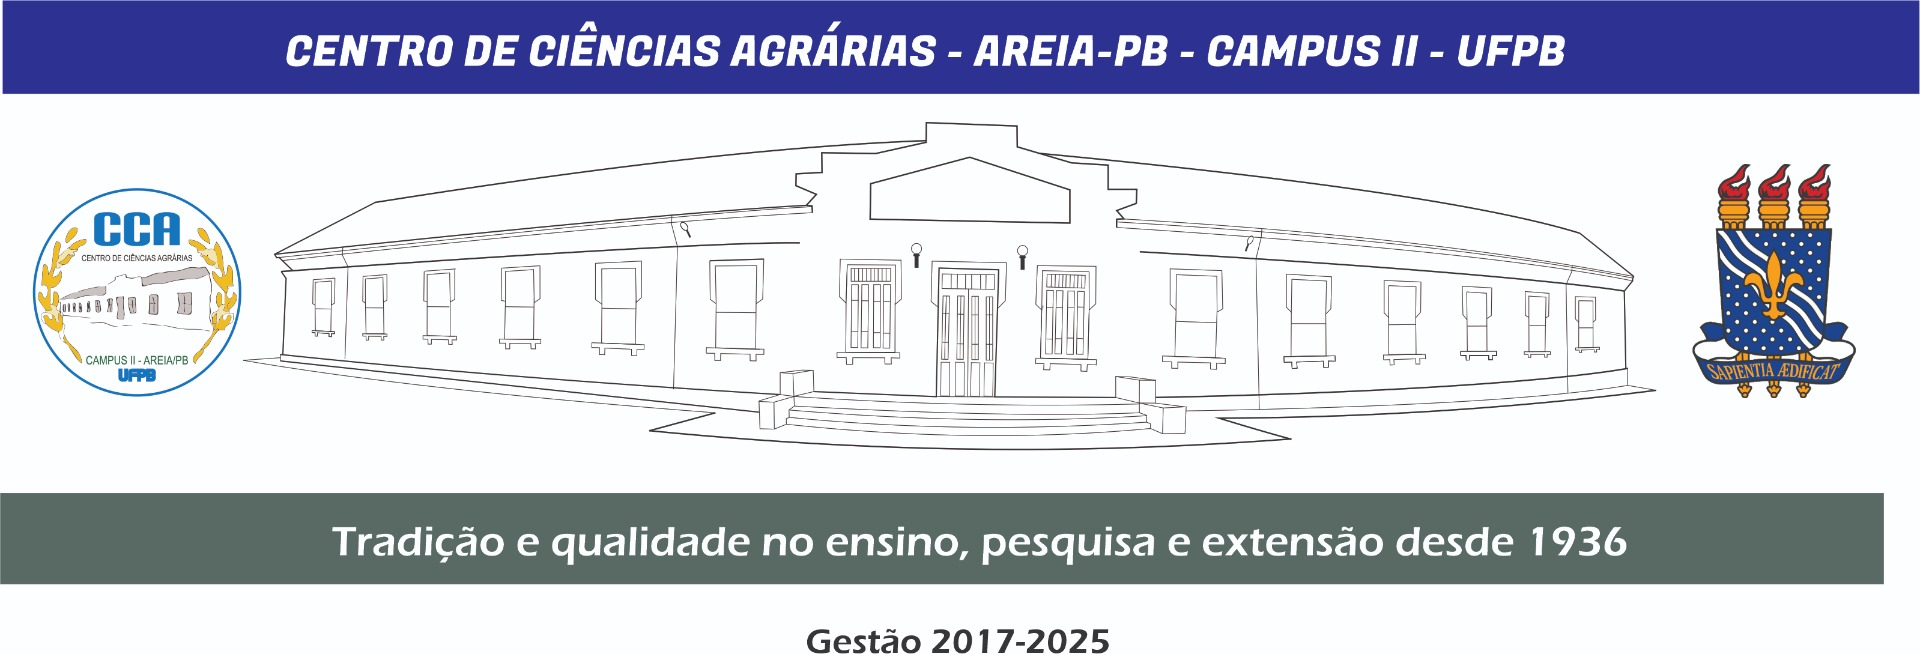 PRÉDIO CENTRAL LINHAS ARTÍSTICAS PANORÂMICA MODELO 1.jpg